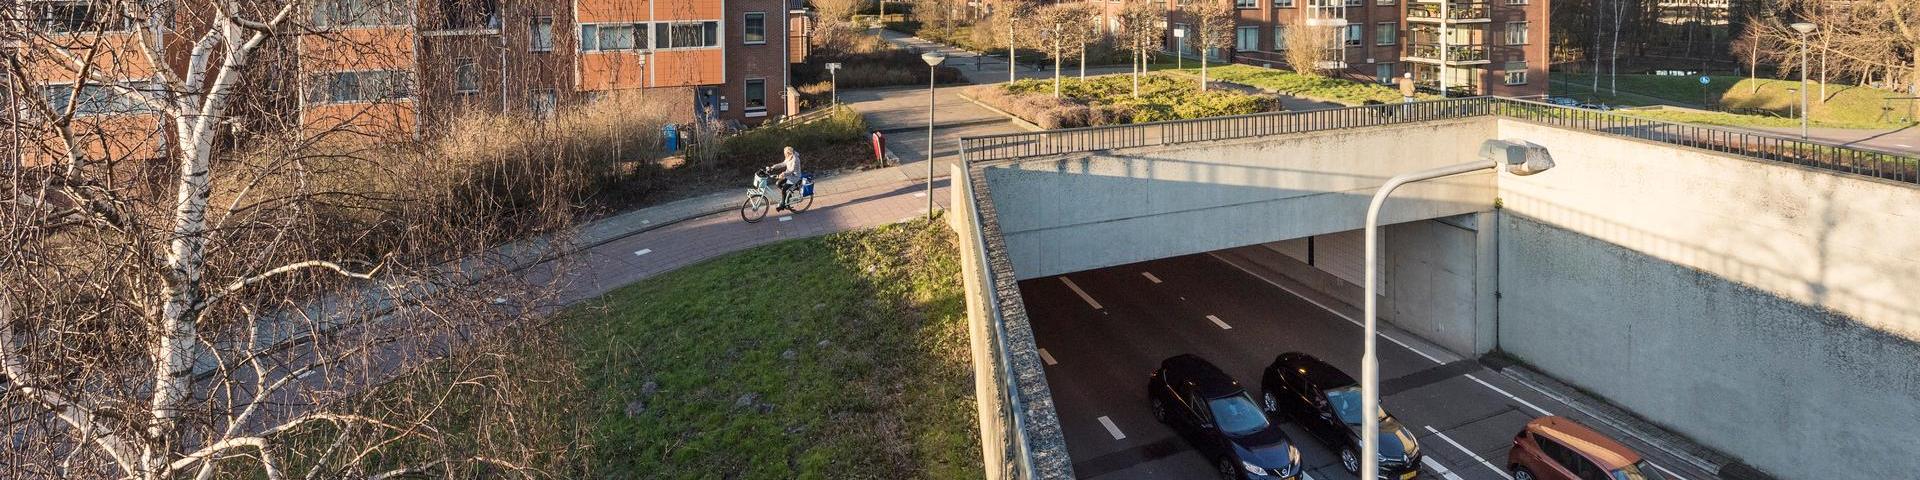 Nederland, Zuid Holland, Leidschandam-Voorburg, Sijtwendetunnel weg N14. De tunnel bestaat uit 3 delen: de Vliettunnel onder de Vliet, de Parktunnel onder bebouwd gebied, woonwijk, en de Spoortunnel onder de spoorlijk Aen Haag. Op demsterdam-D foto de parktunnel oostzijde